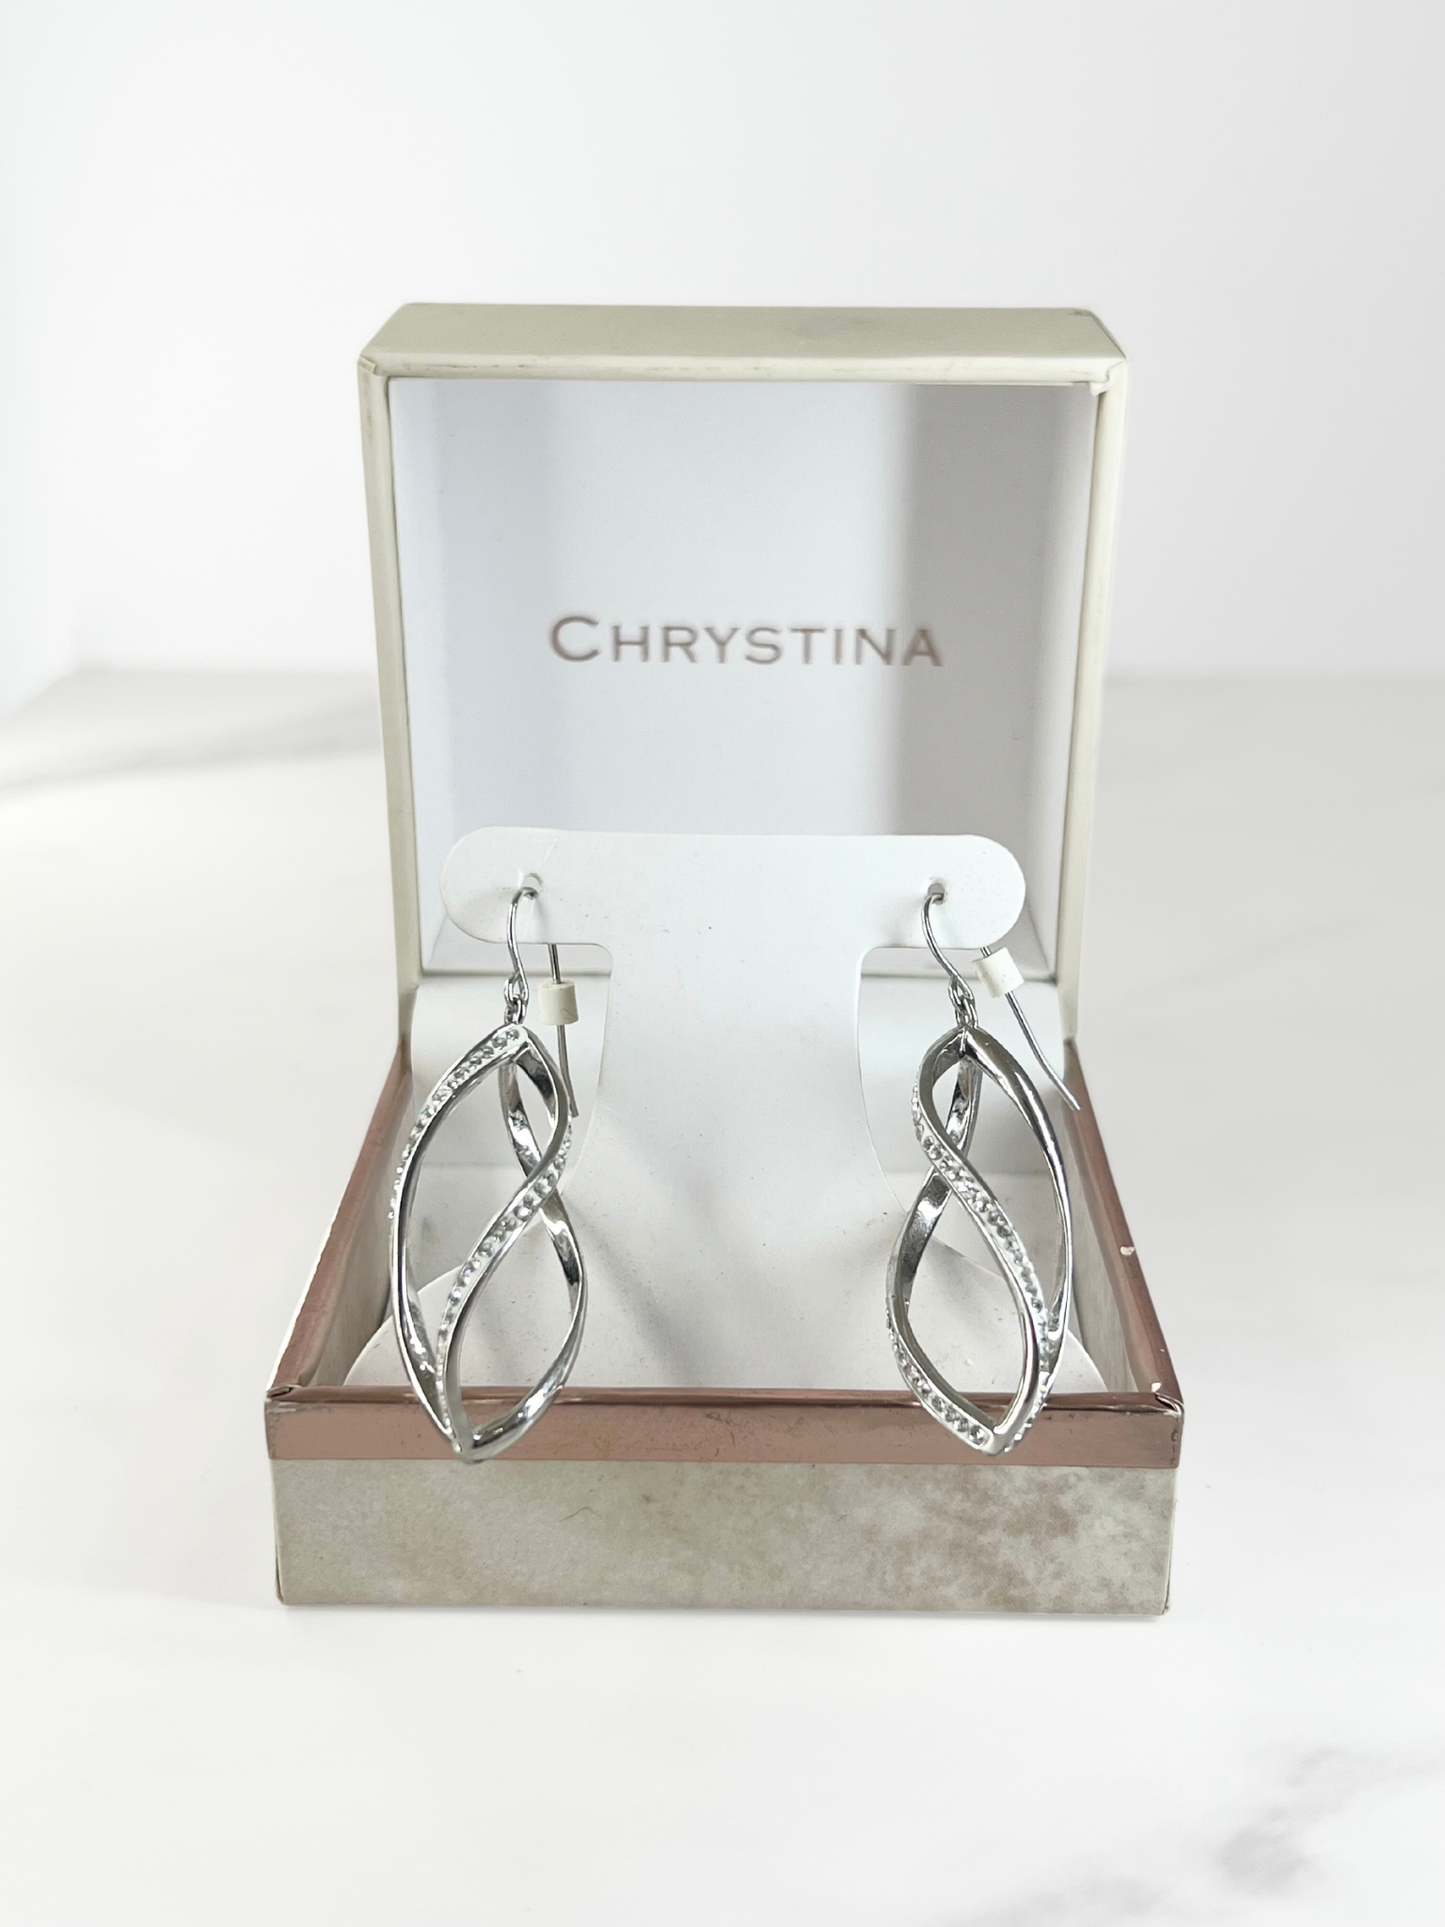 Chrystina Genuine Crystal Earrings